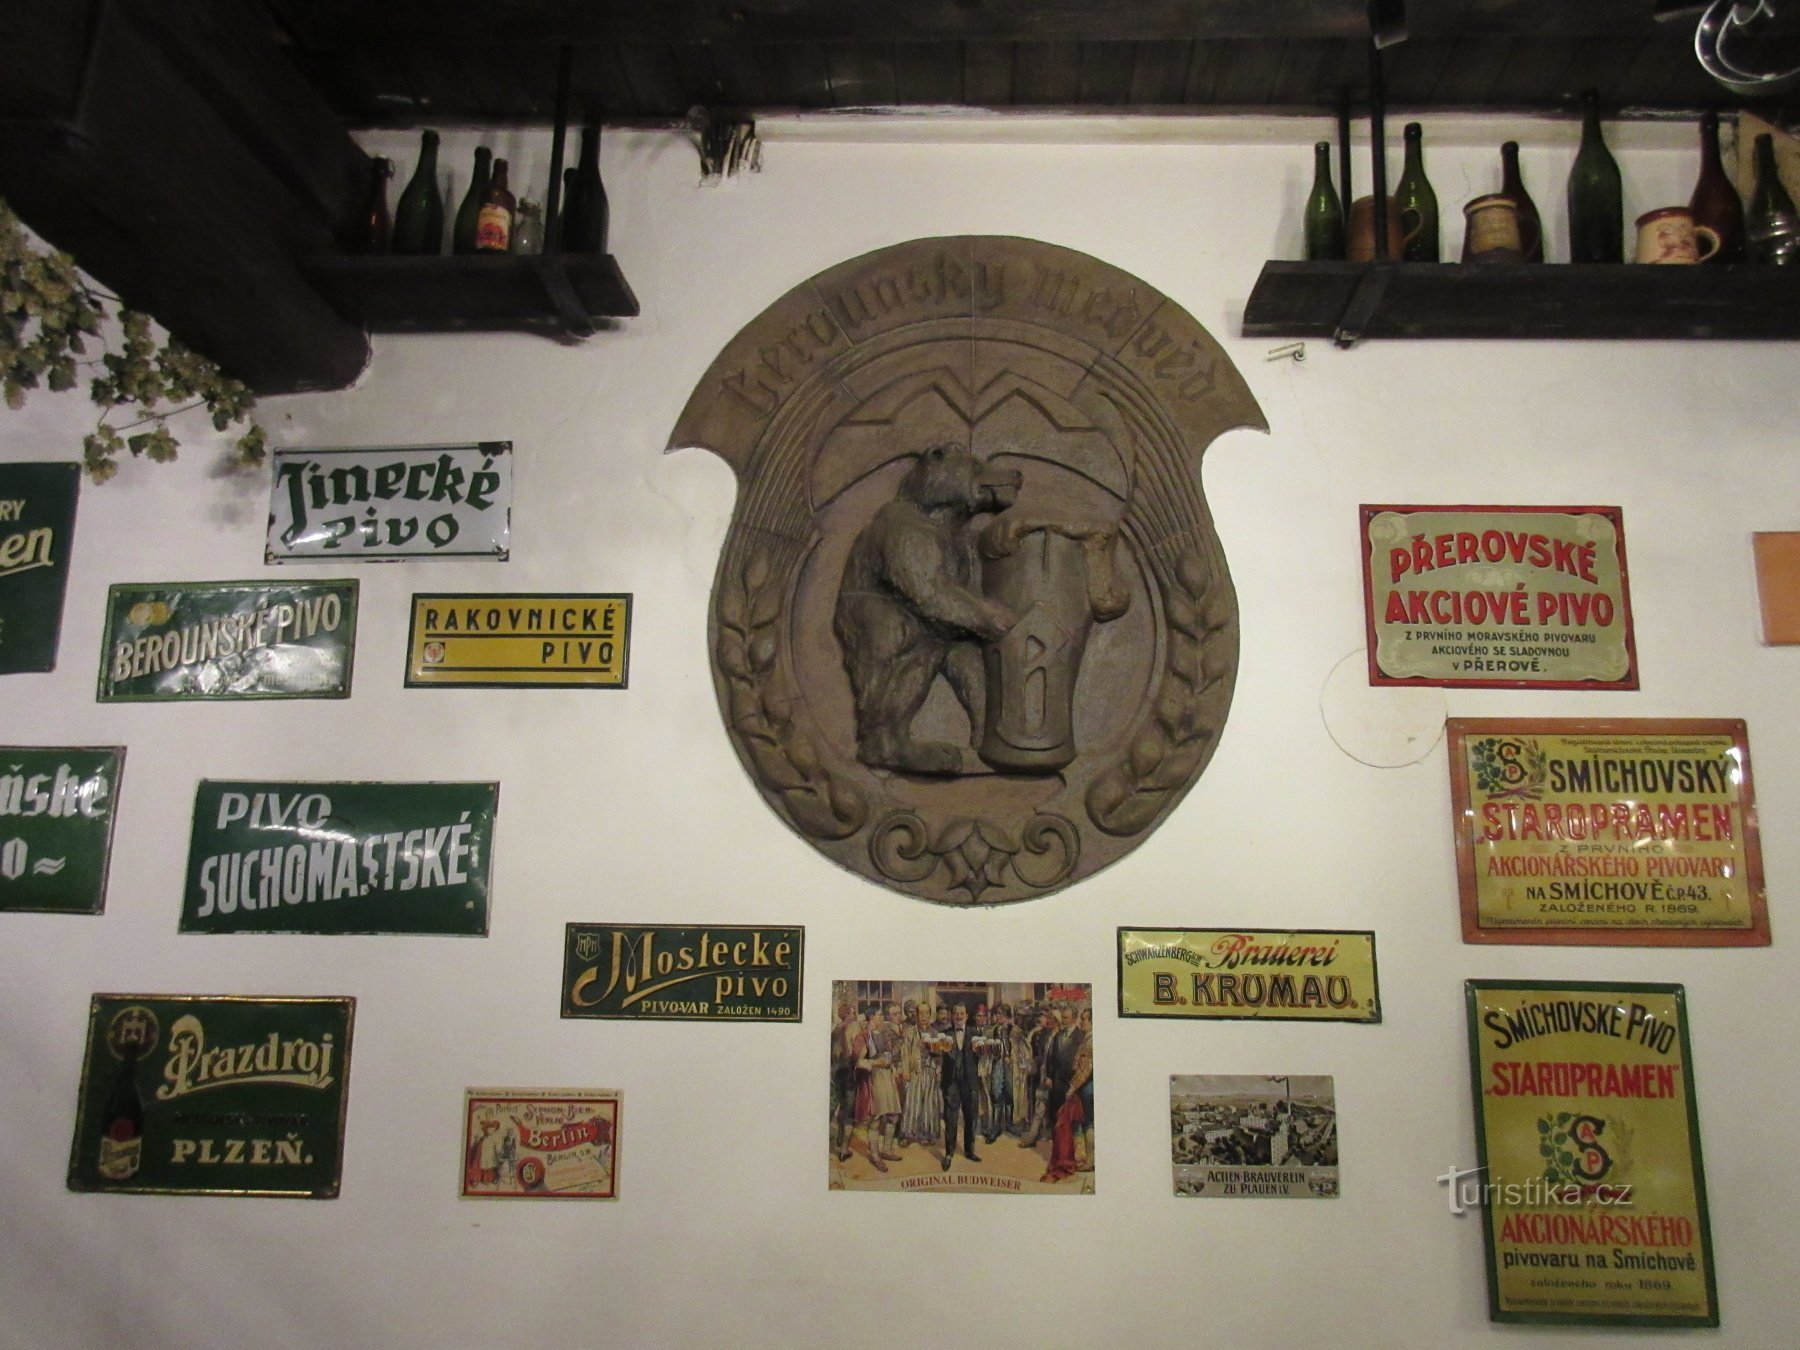 Zgodovina pivovarstva v Berounu in družinska pivovarna Berounský medvěd